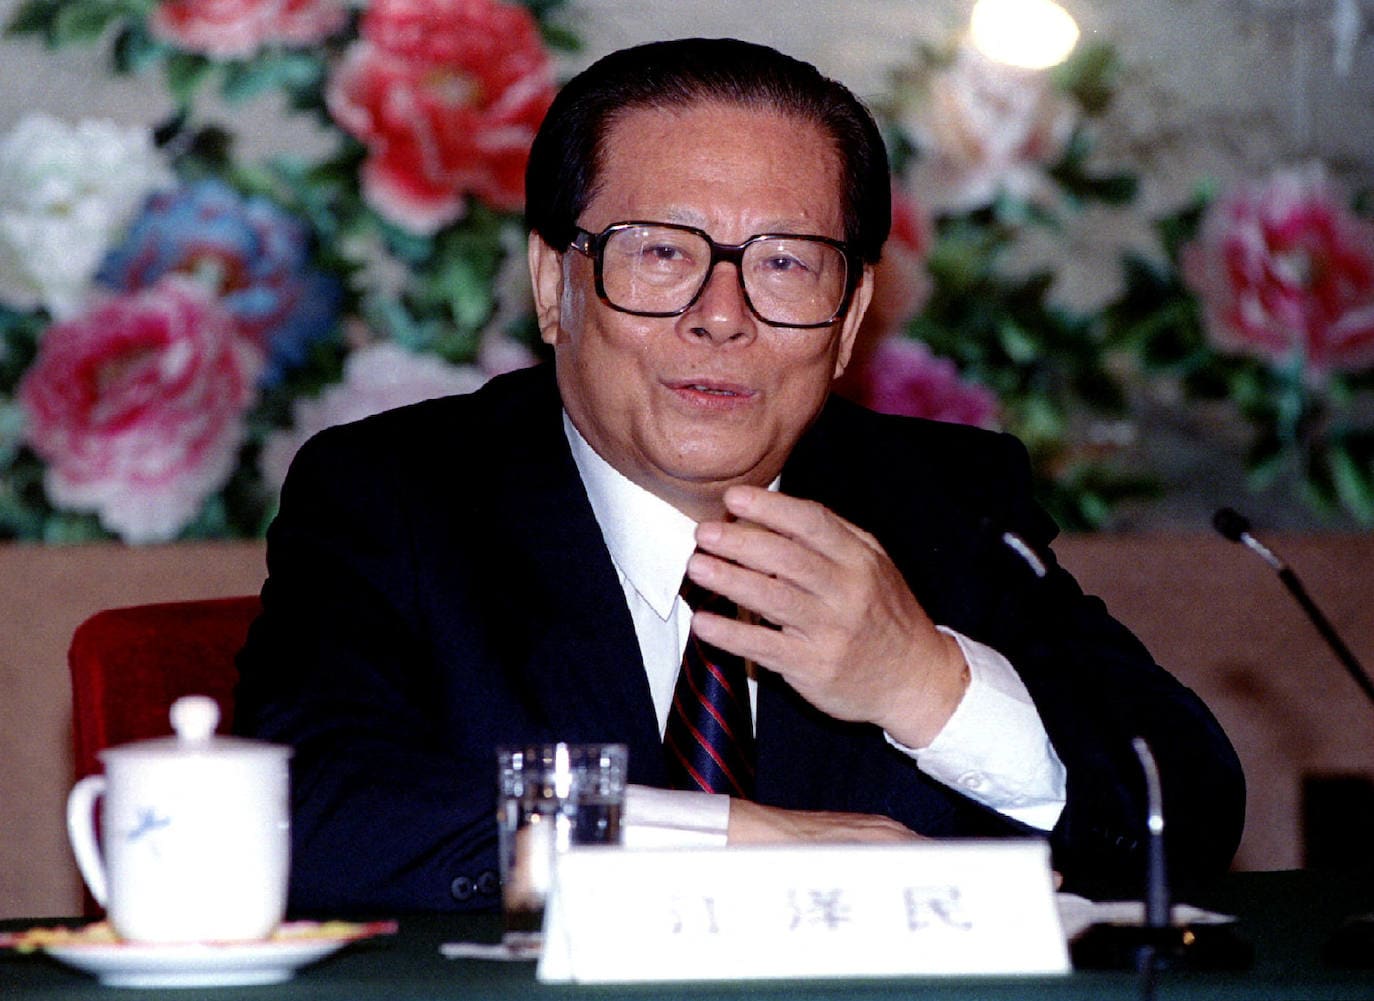 Fallece Jiang Zemin a los 96 años